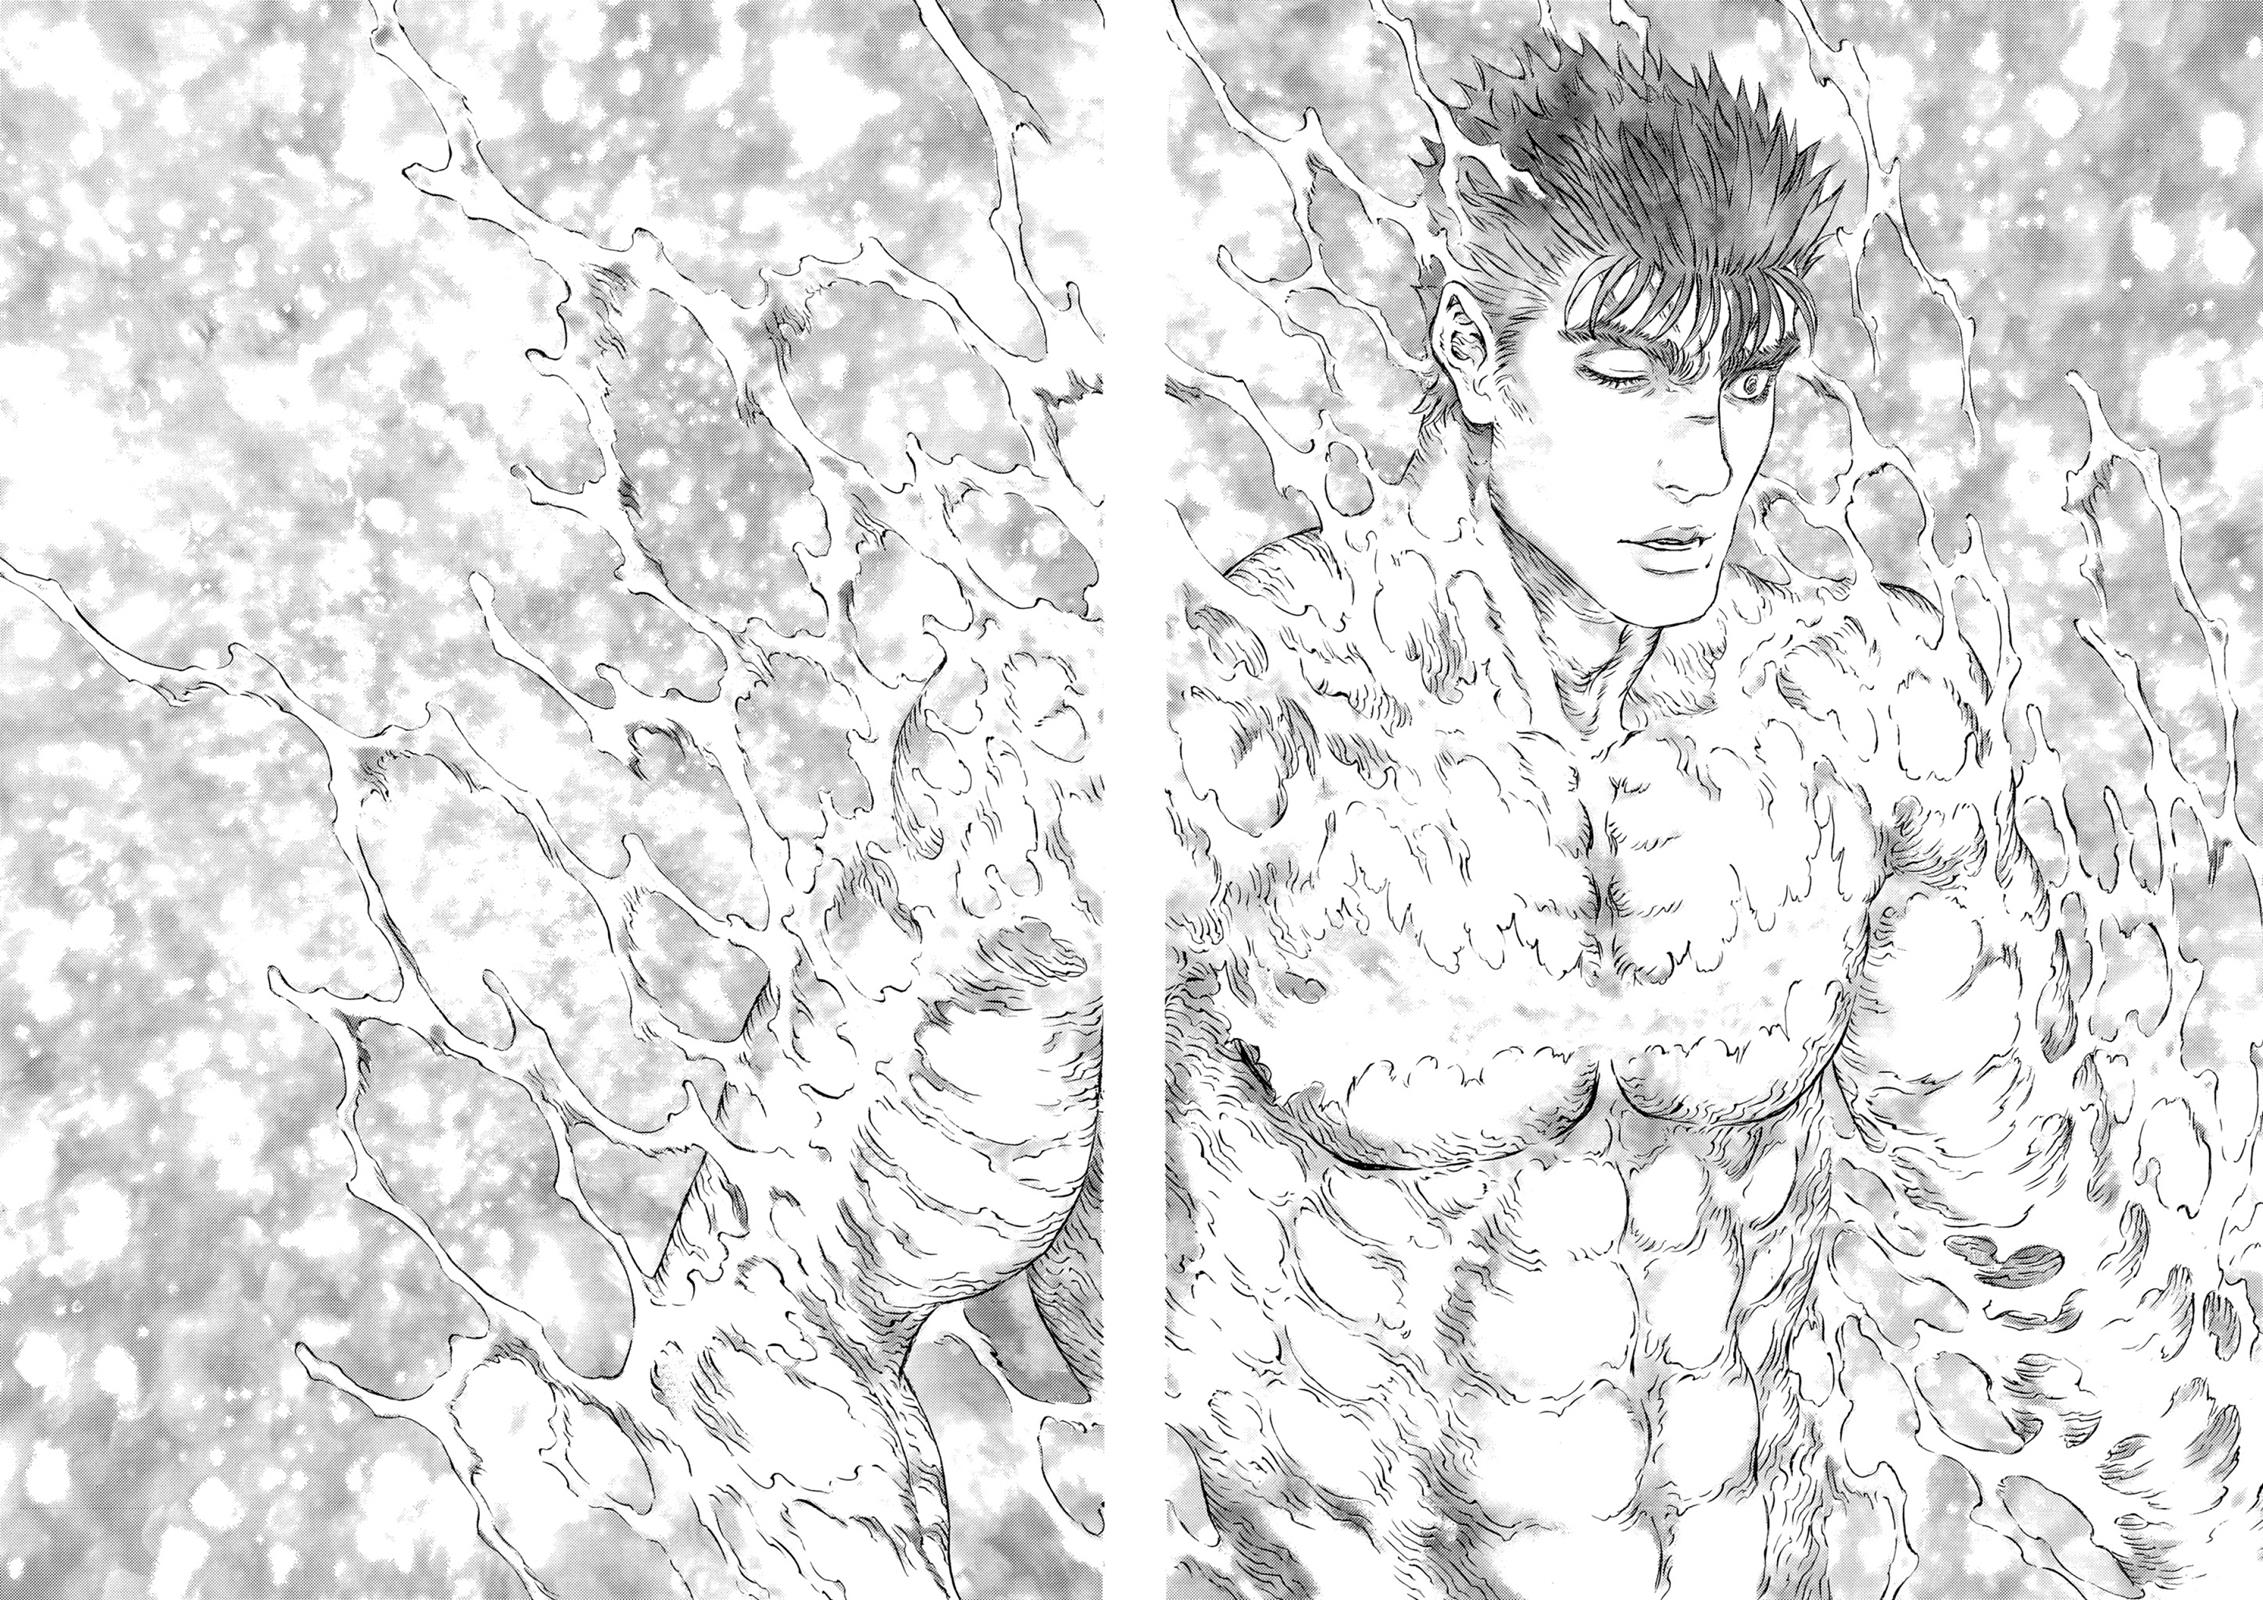 Berserk Manga Chapter 305 image 07